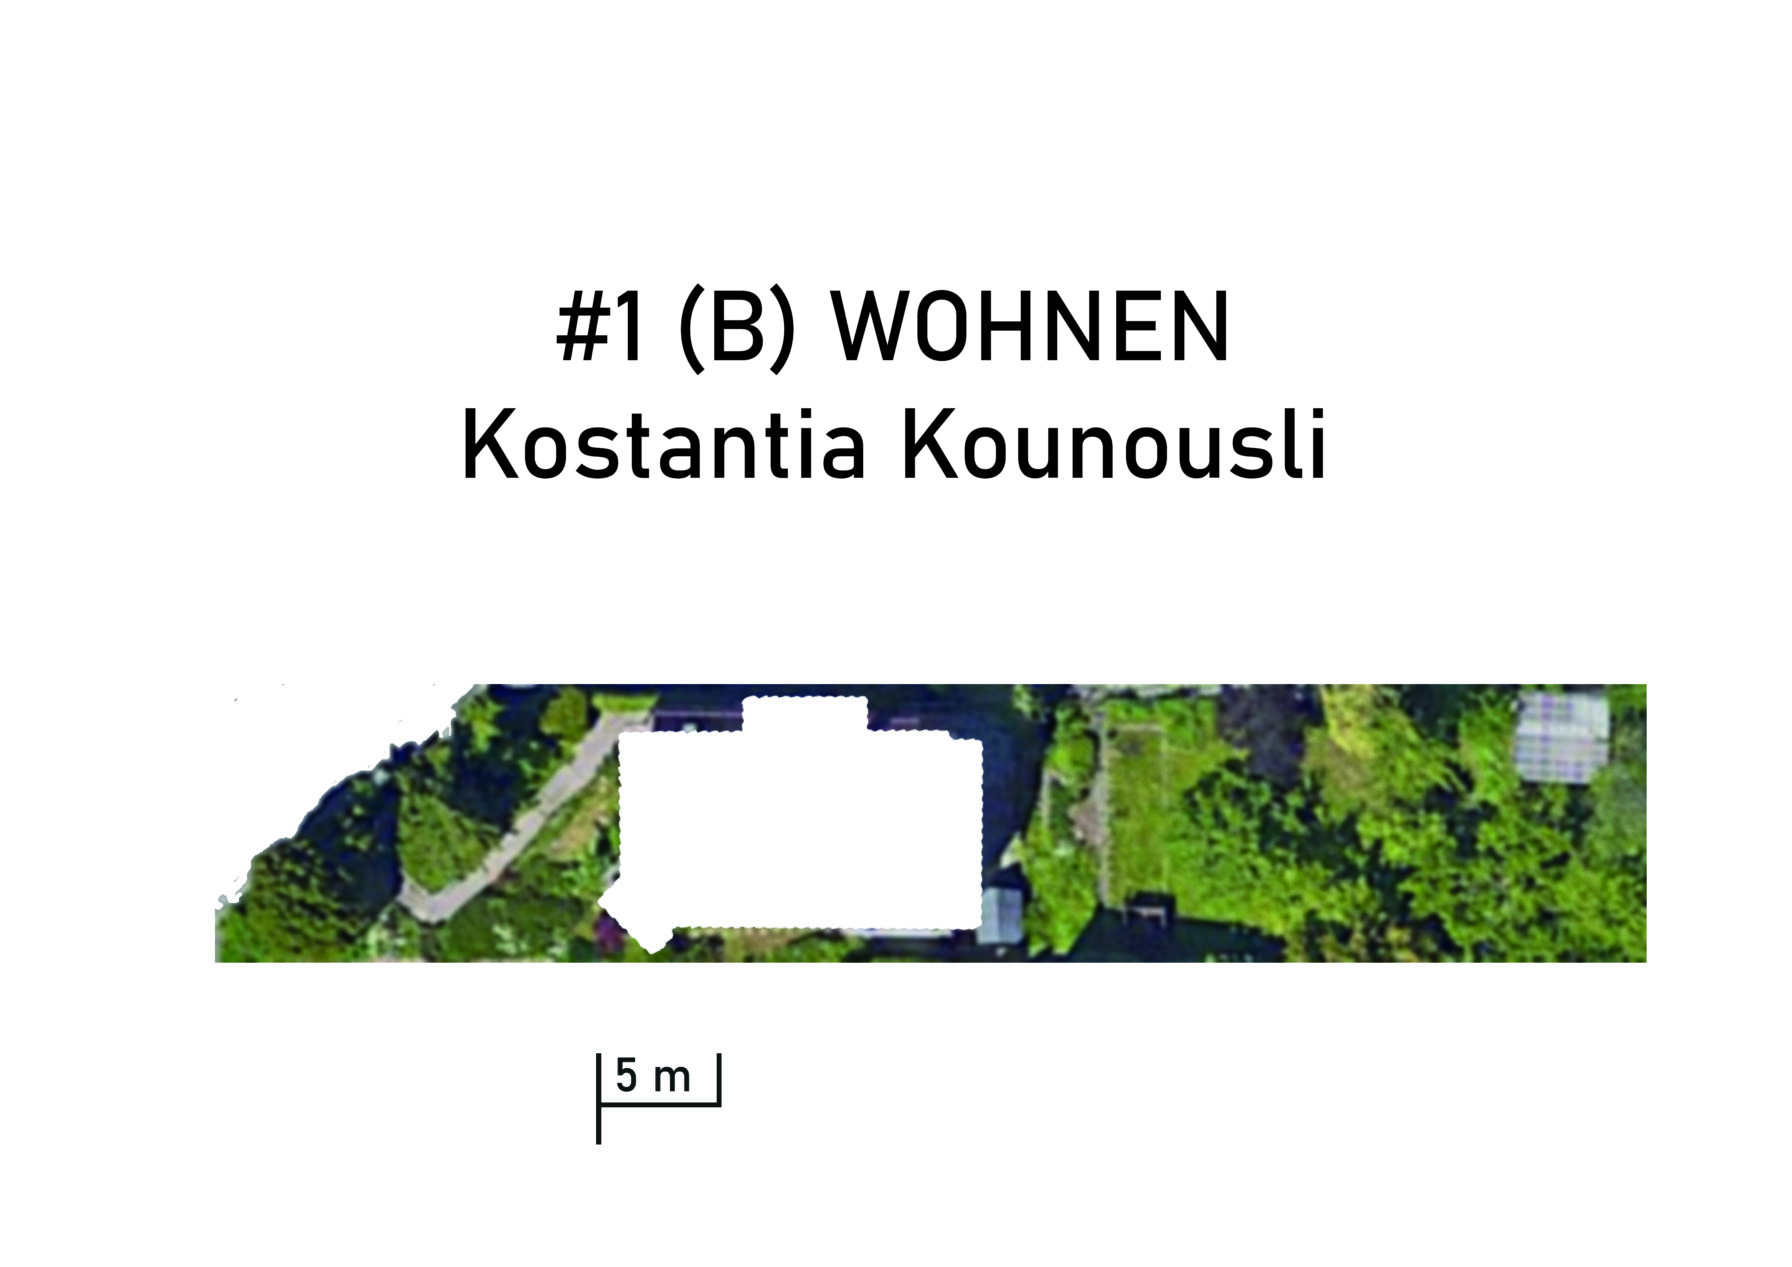 #1 WOHNEN? (B) -Kostantia Kounousli